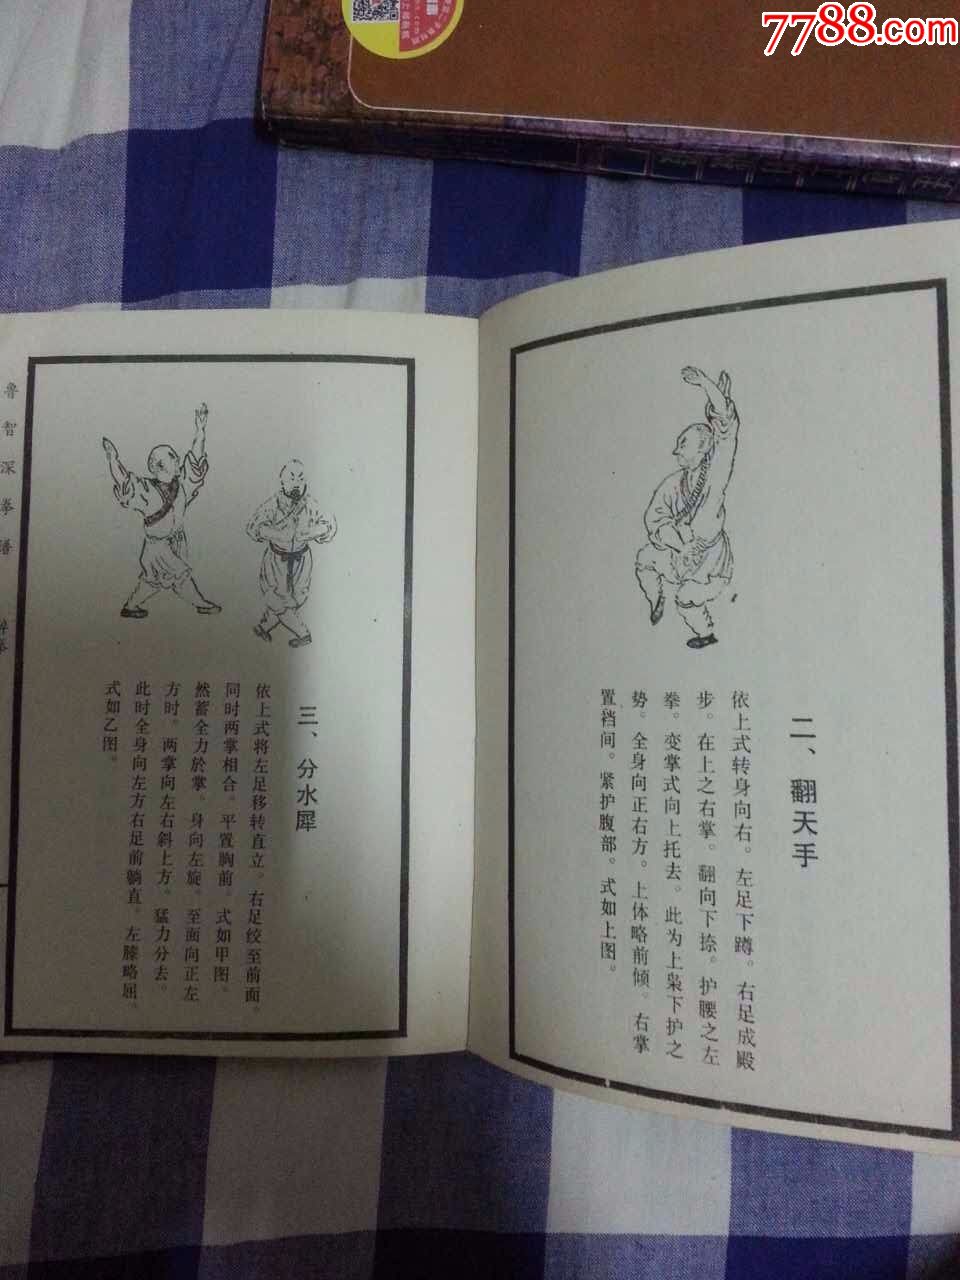 鲁智深拳谱(据1929年上海中西书局版本排印)上图下文醉拳.开山拳等